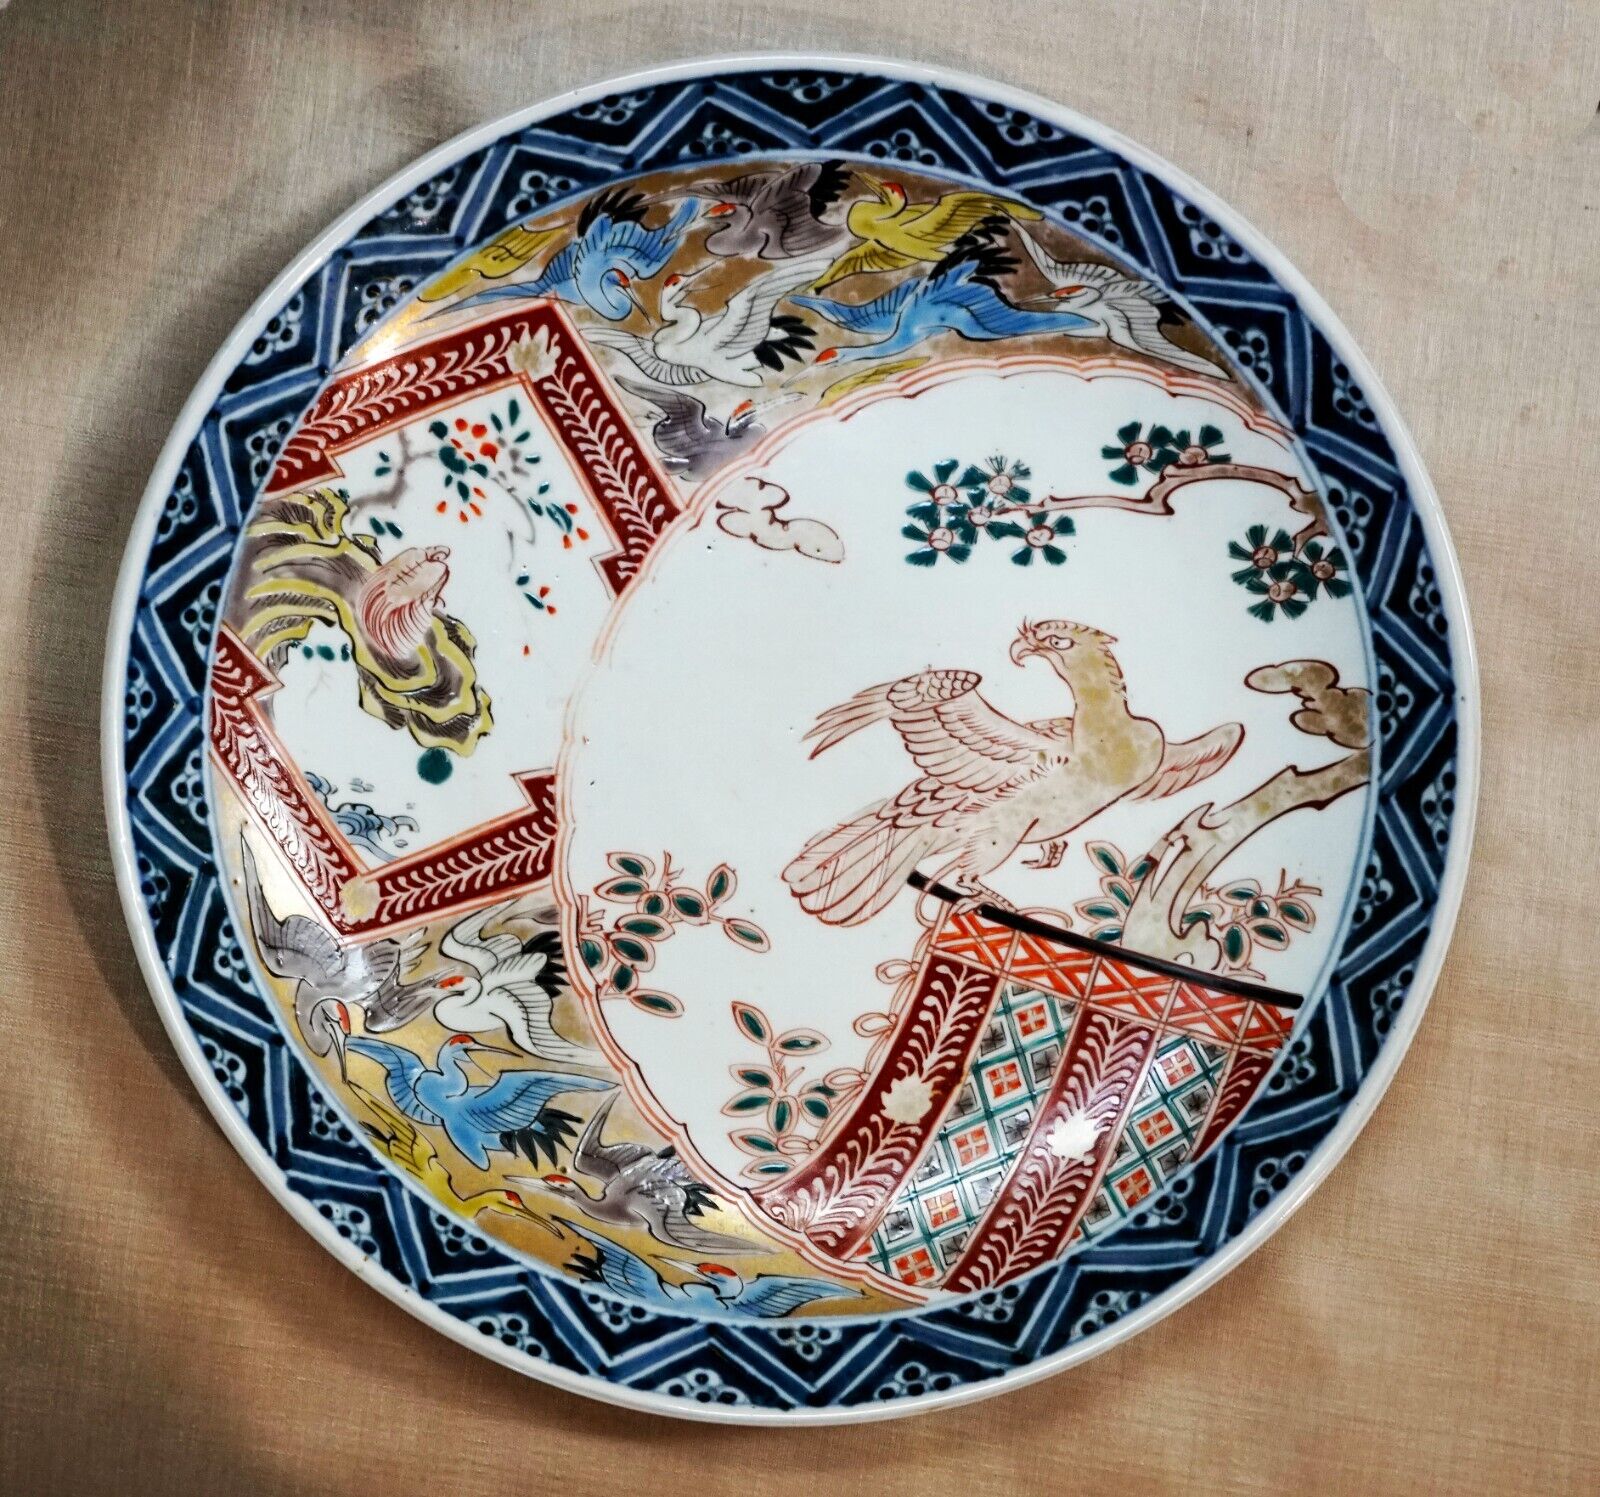 Authentic Antique Japanese Arita Imari Porcelain Plate Meiji period c. 1850